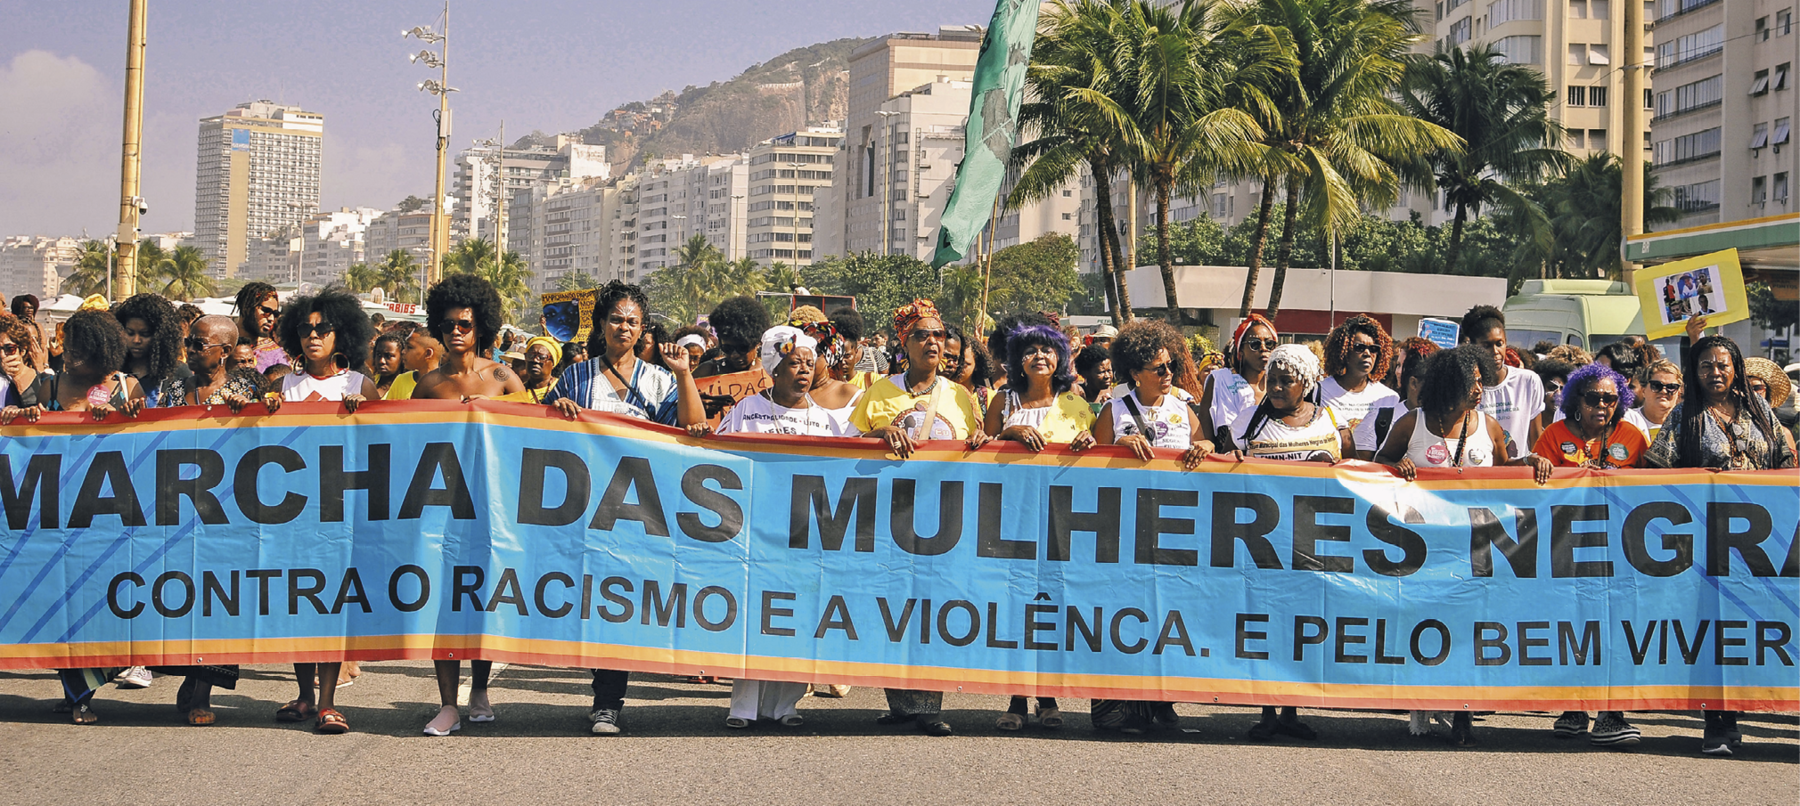 Fotografia. Mulheres em manifestação em uma rua. Elas carregam uma grande faixa de fundo azul com bordas cor de laranja com o texto: 'MARCHA DAS MULHERES NEGRAS CONTRA O RACISMO E A VIOLÊNCIA E PELO BEM VIVER'. Ao fundo, prédio, um morro e algumas palmeiras. No alto, o céu azul claro.